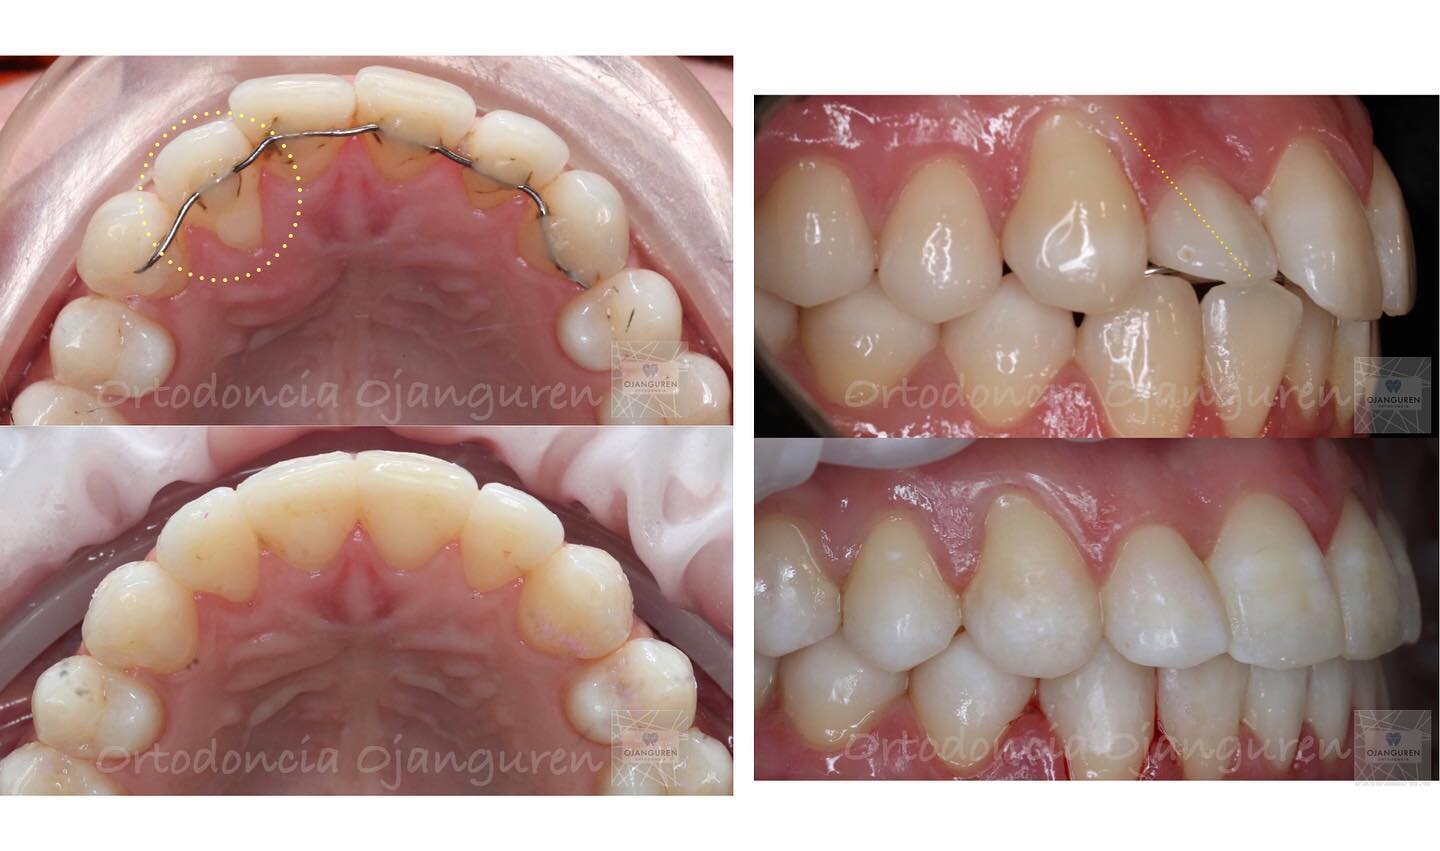 Las retenciones mal ajustadas pueden generarnos migraciones y otros problemas en los dientes 🤔
.
.
#ortodonciaojanguren #retencion #ortodoncialogro&ntilde;o #invisalign #orthodontics